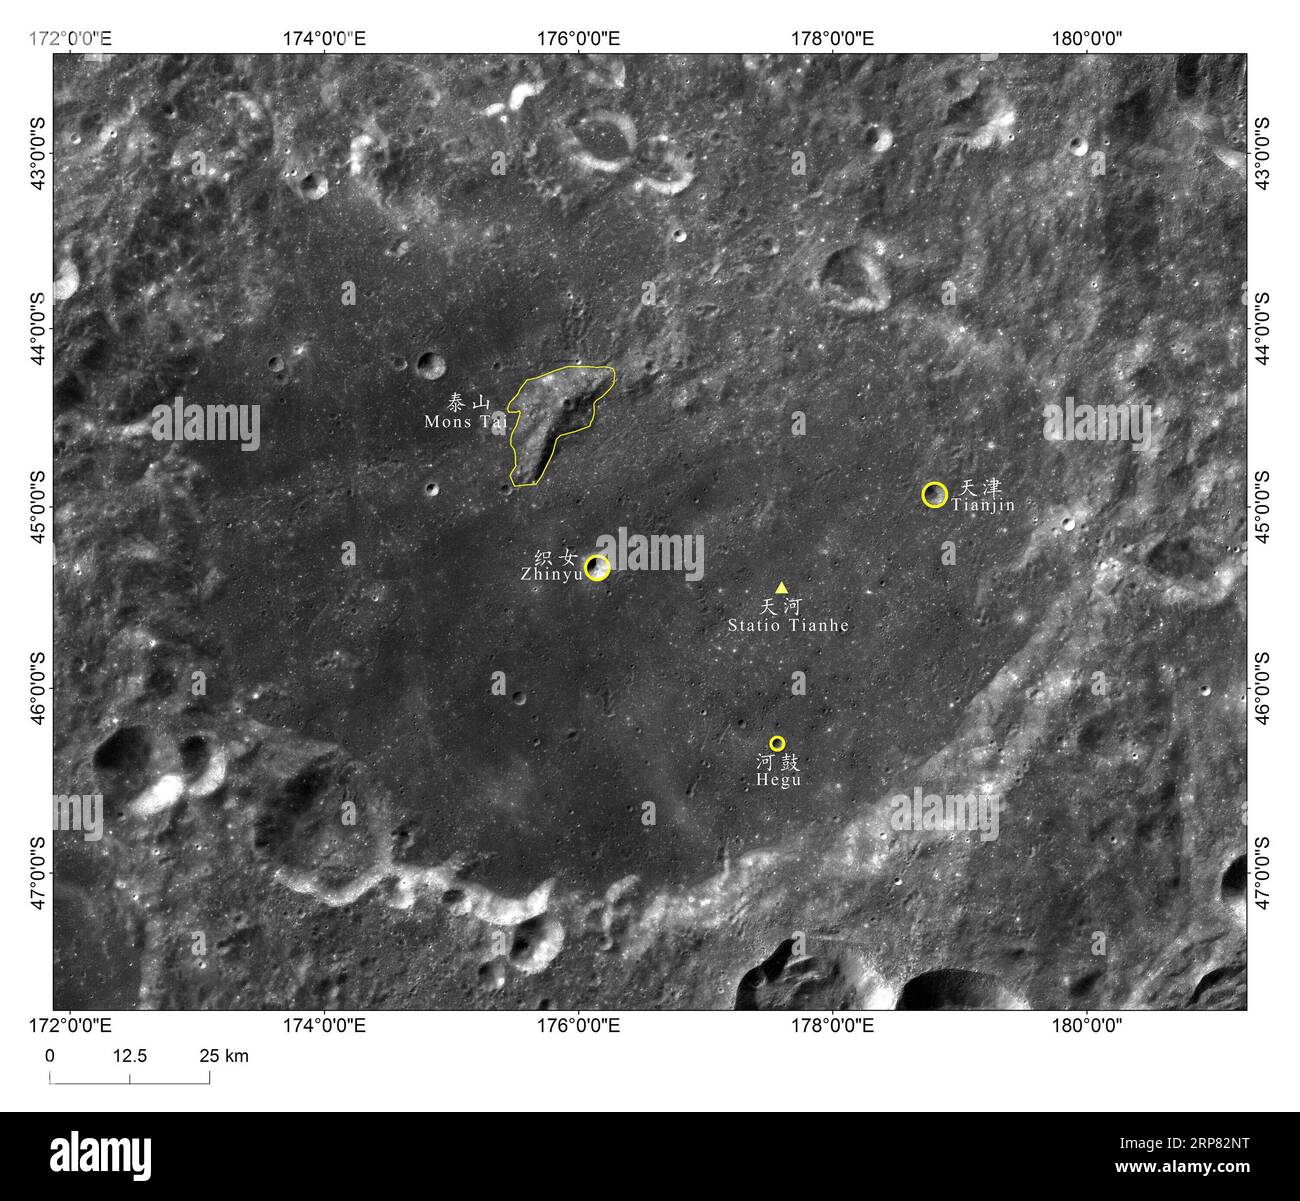 (190216) -- PÉKIN, 16 février 2019 (Xinhua) -- une photo fournie par l'Administration spatiale nationale chinoise (CNSA) montre l'image du site d'atterrissage de la sonde lunaire Chang e-4 chinoise, Statio Tianhe , entourée de trois cratères d'impact voisins et d'une colline. Le site d'atterrissage de la sonde lunaire Chang e-4 de la Chine a été nommé Statio Tianhe après que le vaisseau spatial ait effectué le premier atterrissage en douceur sur l'autre côté de la lune le mois dernier. Avec trois cratères d'impact à proximité et une colline, le nom a été approuvé par l'Union astronomique internationale (UAI), Liu Jizhong, directeur de l'Explora lunaire de Chine Banque D'Images